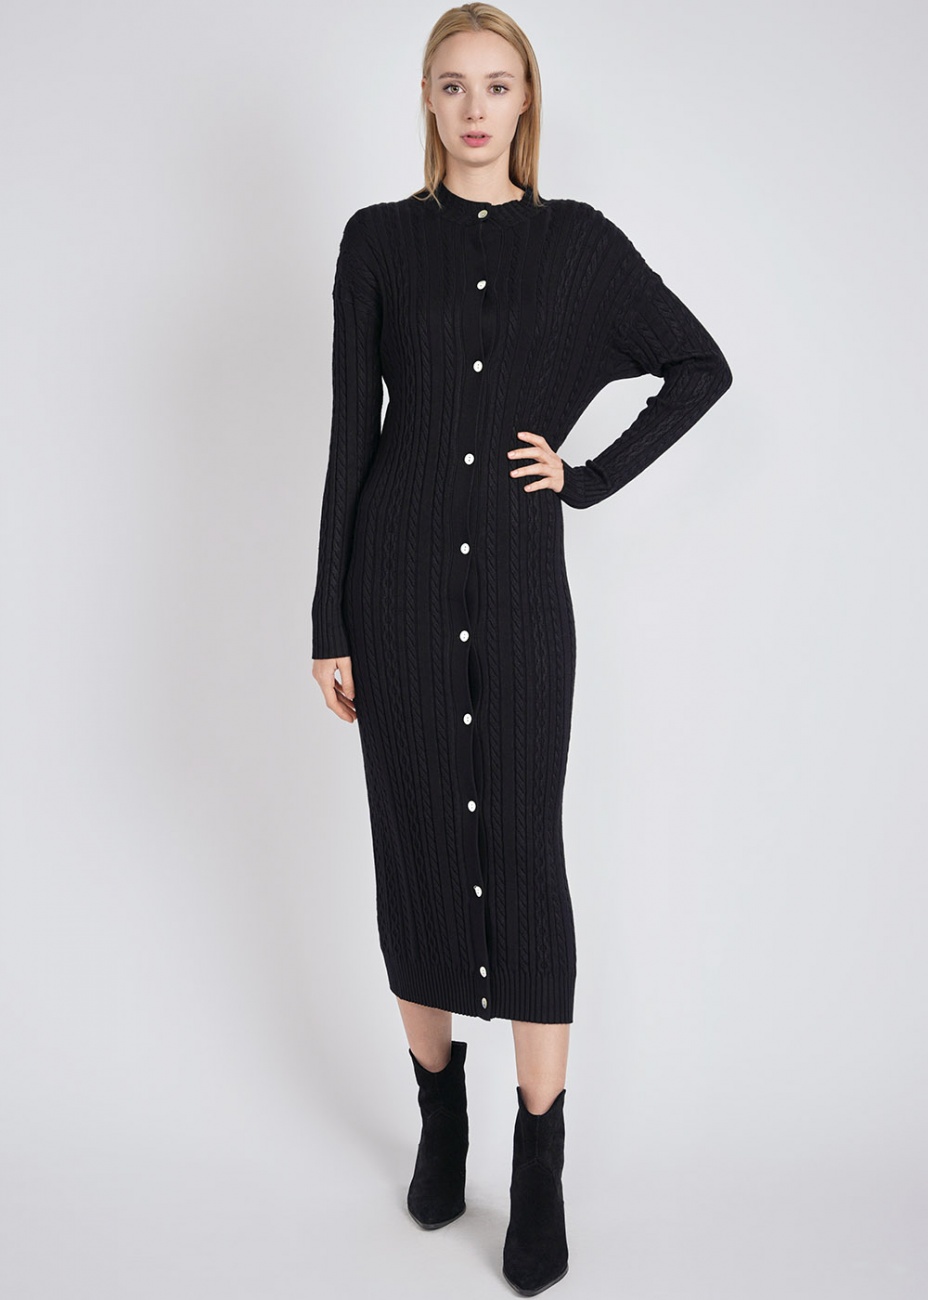 Black Dress Delight: Cable Knit Texture & Buttons | Modest Women ...